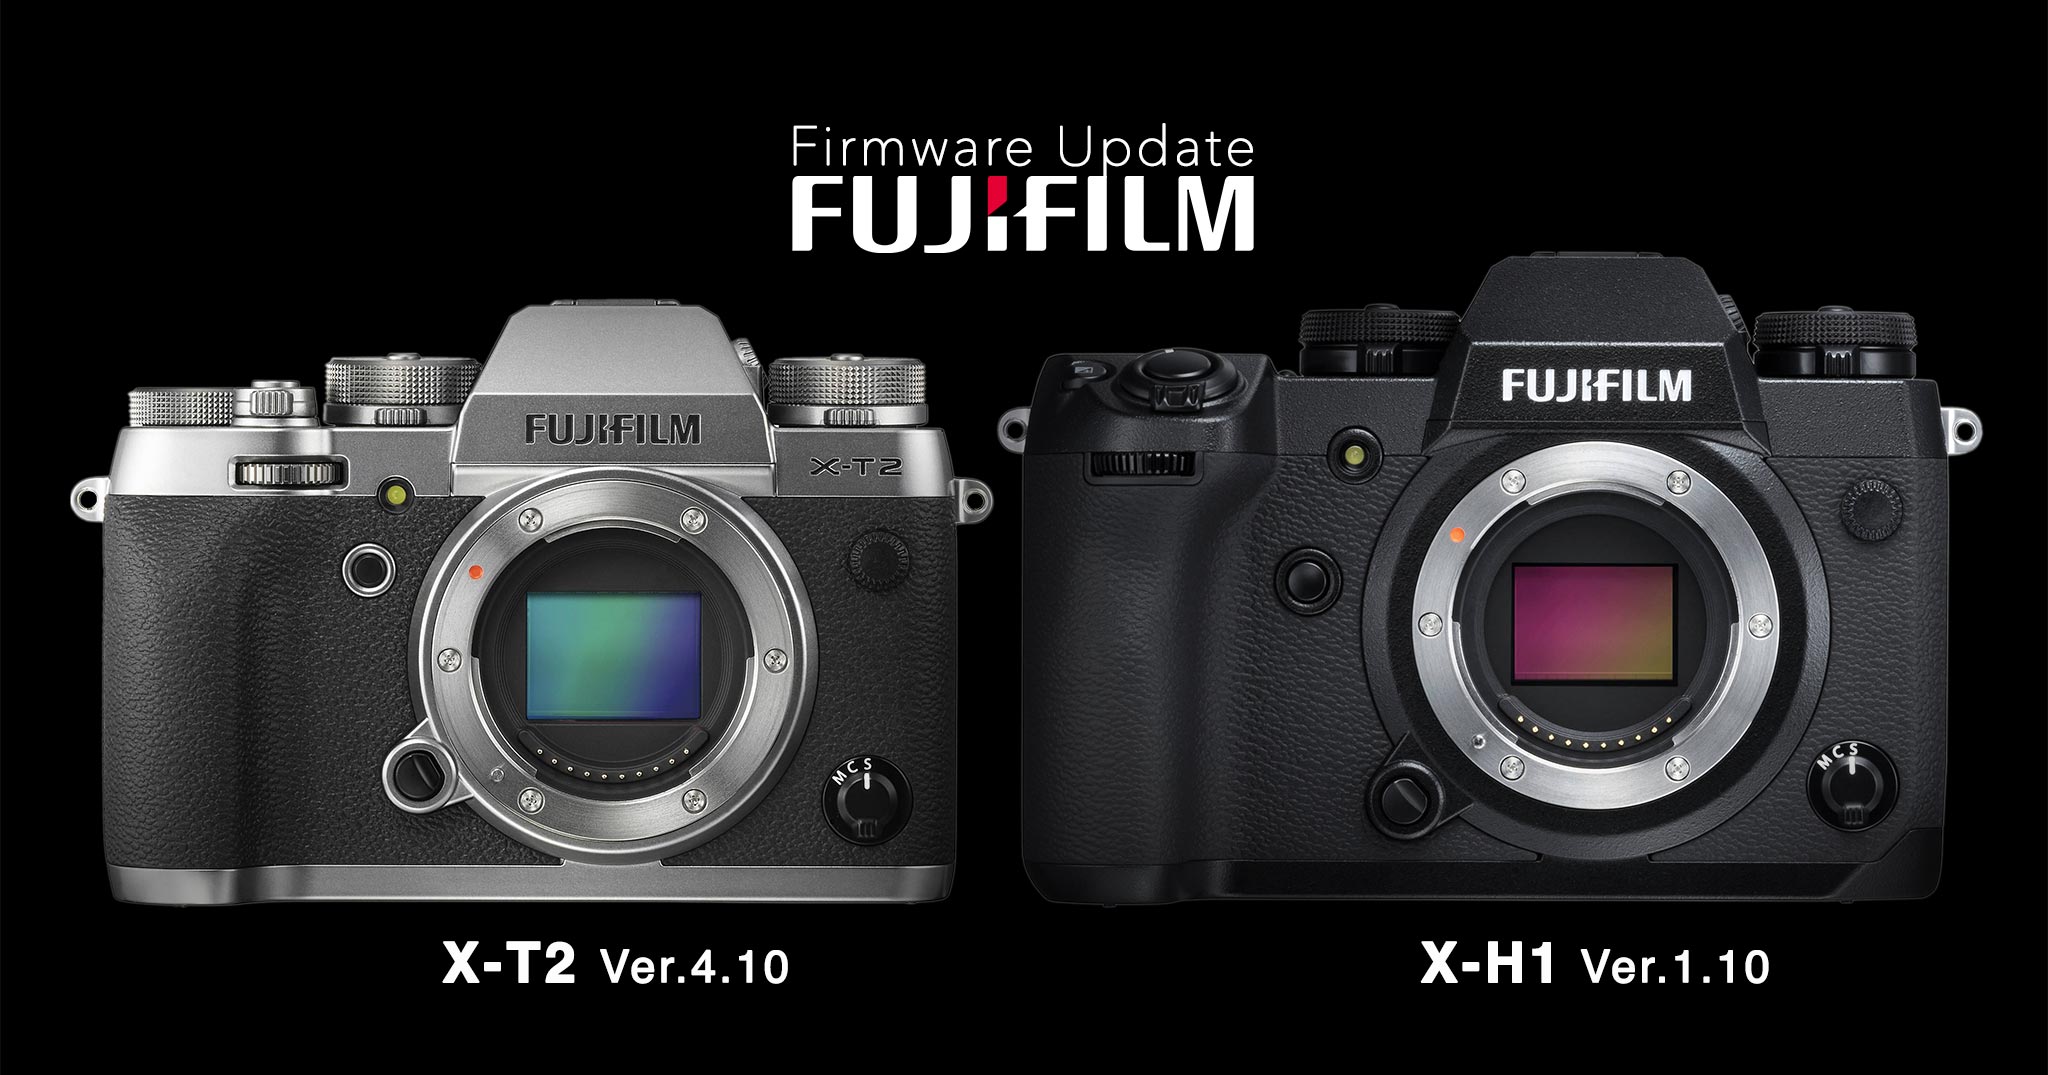 Fujifilm công bố firmware update cho X-T2 và X-H1, hoãn bản update cho GFX 50S và X-Pro2 đến tháng 7